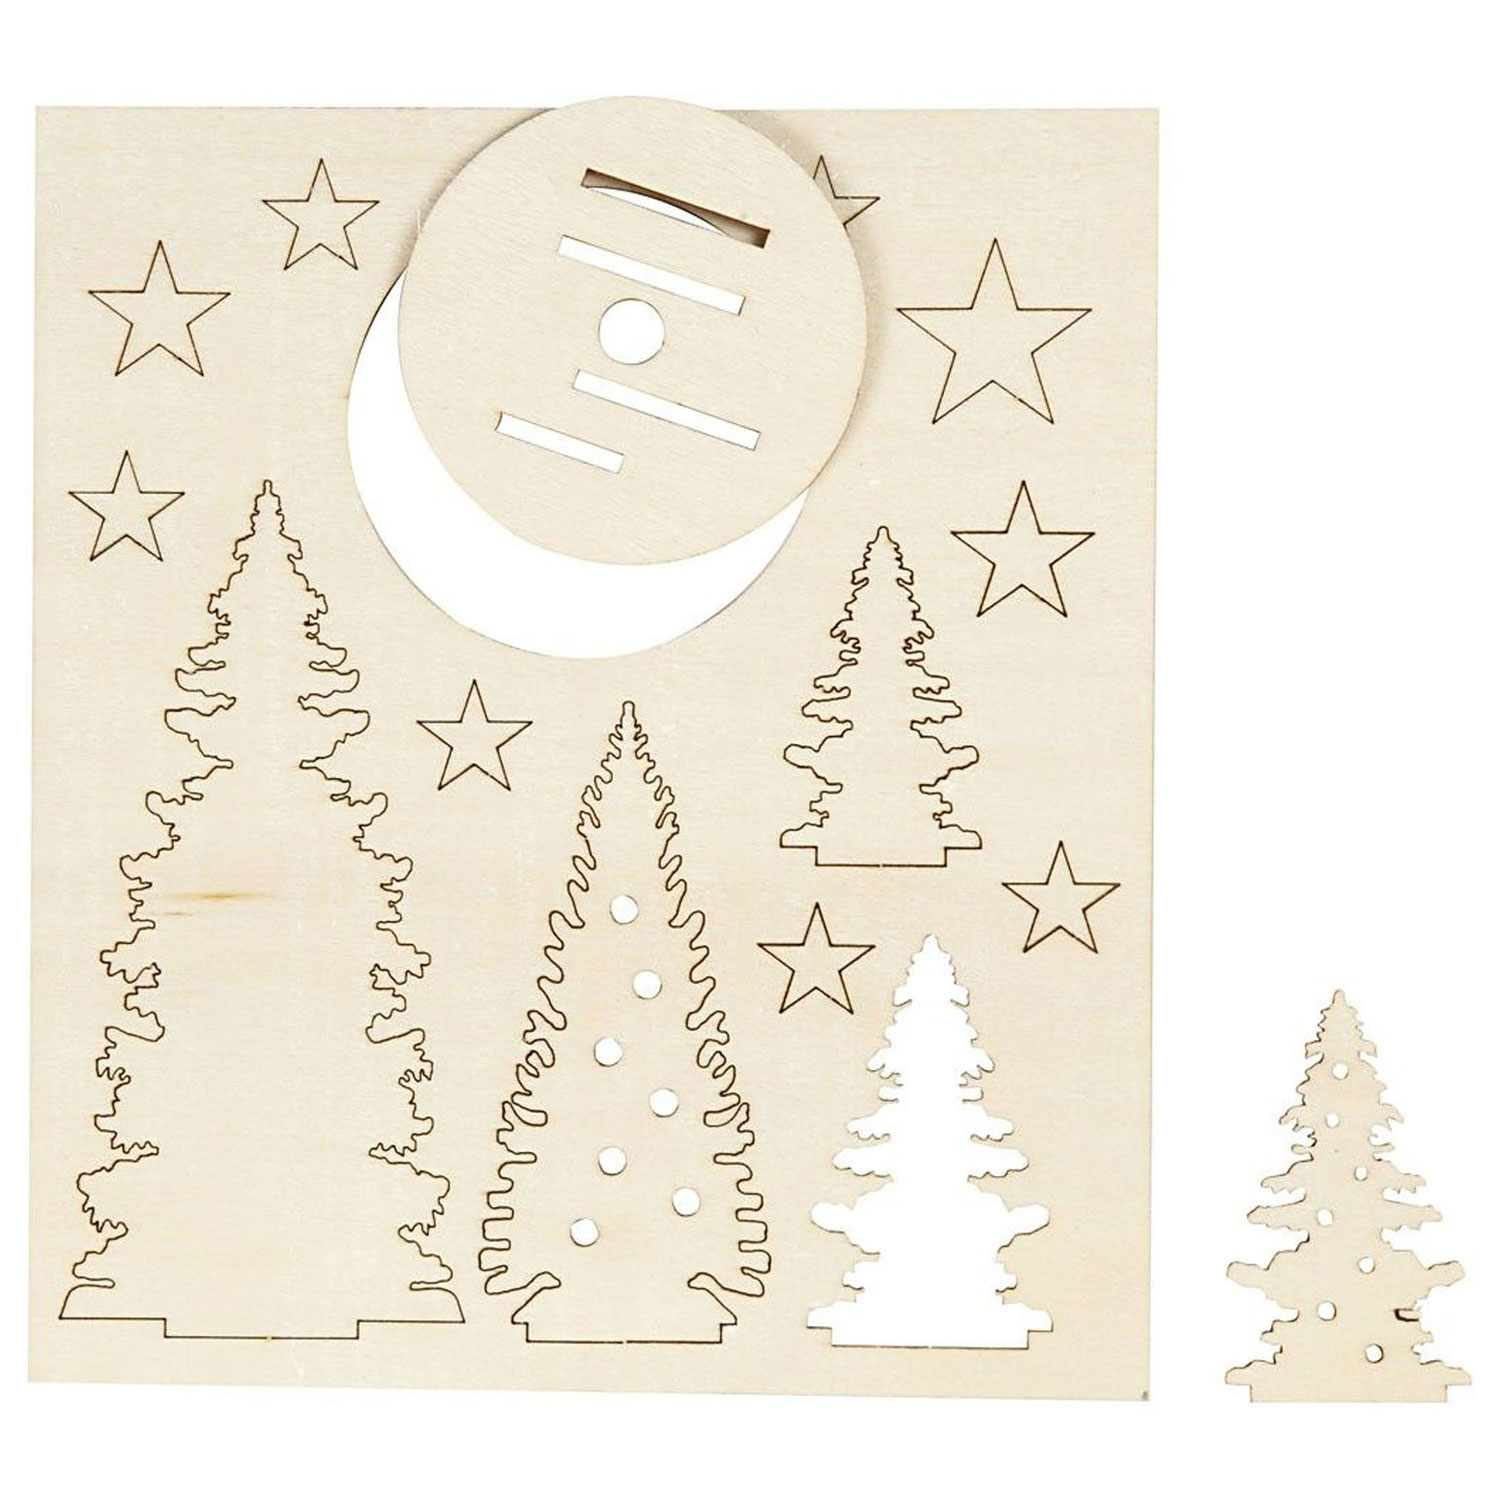 Fabriquez et décorez vos sapins de Noël en bois